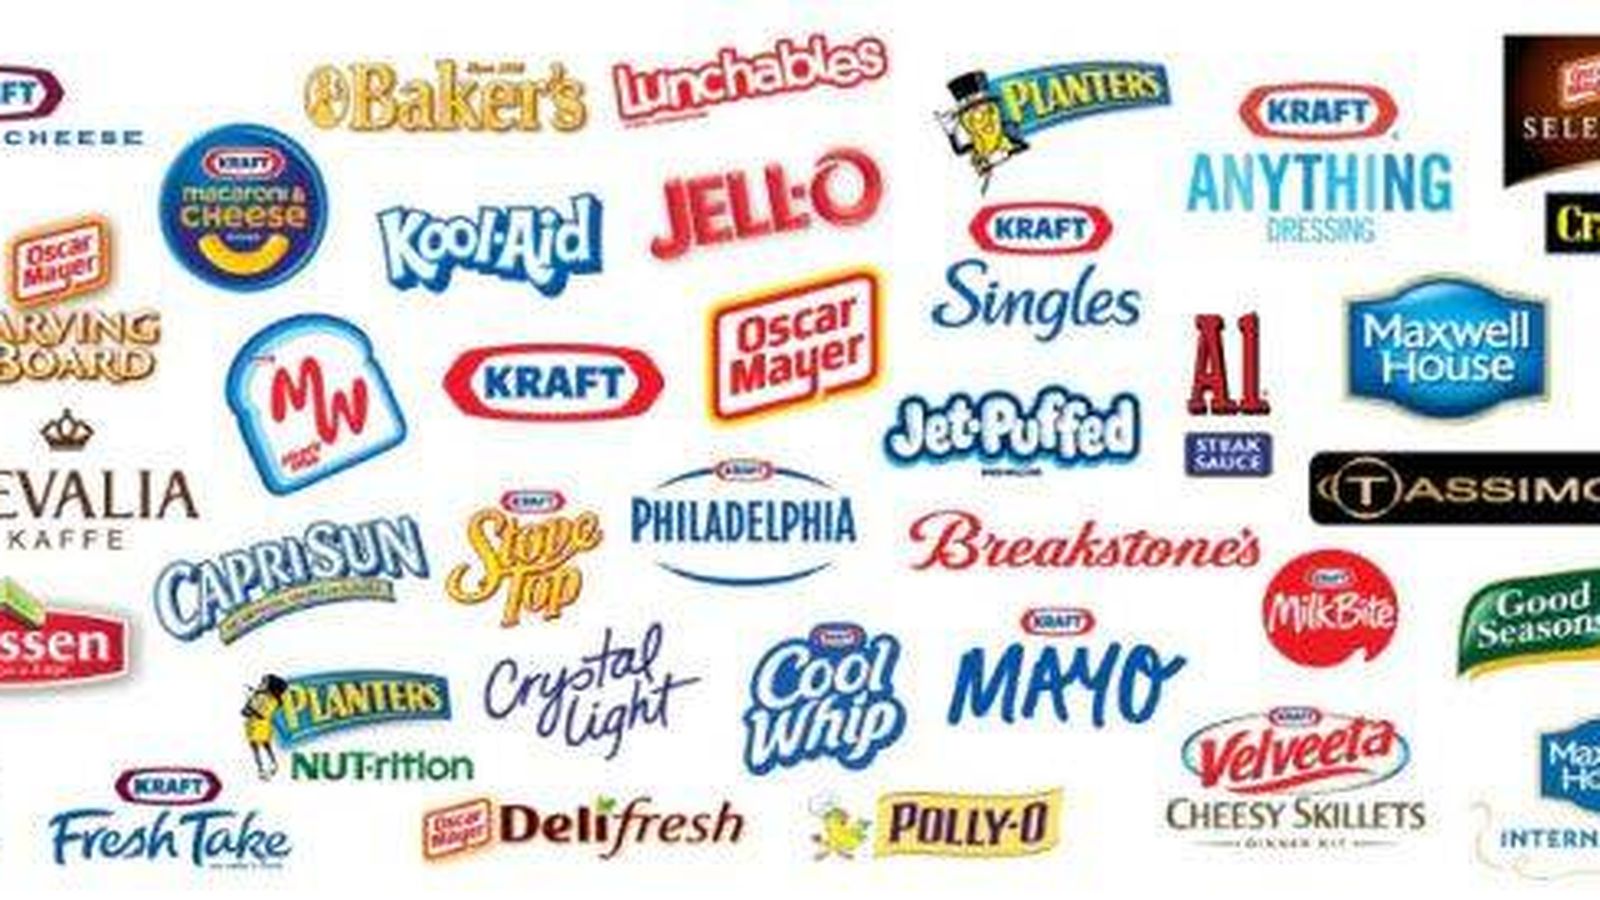 Foto: Marcas de Kraft Heinz y Unilever. (Consulta en la tabla del texto de quién es quién)